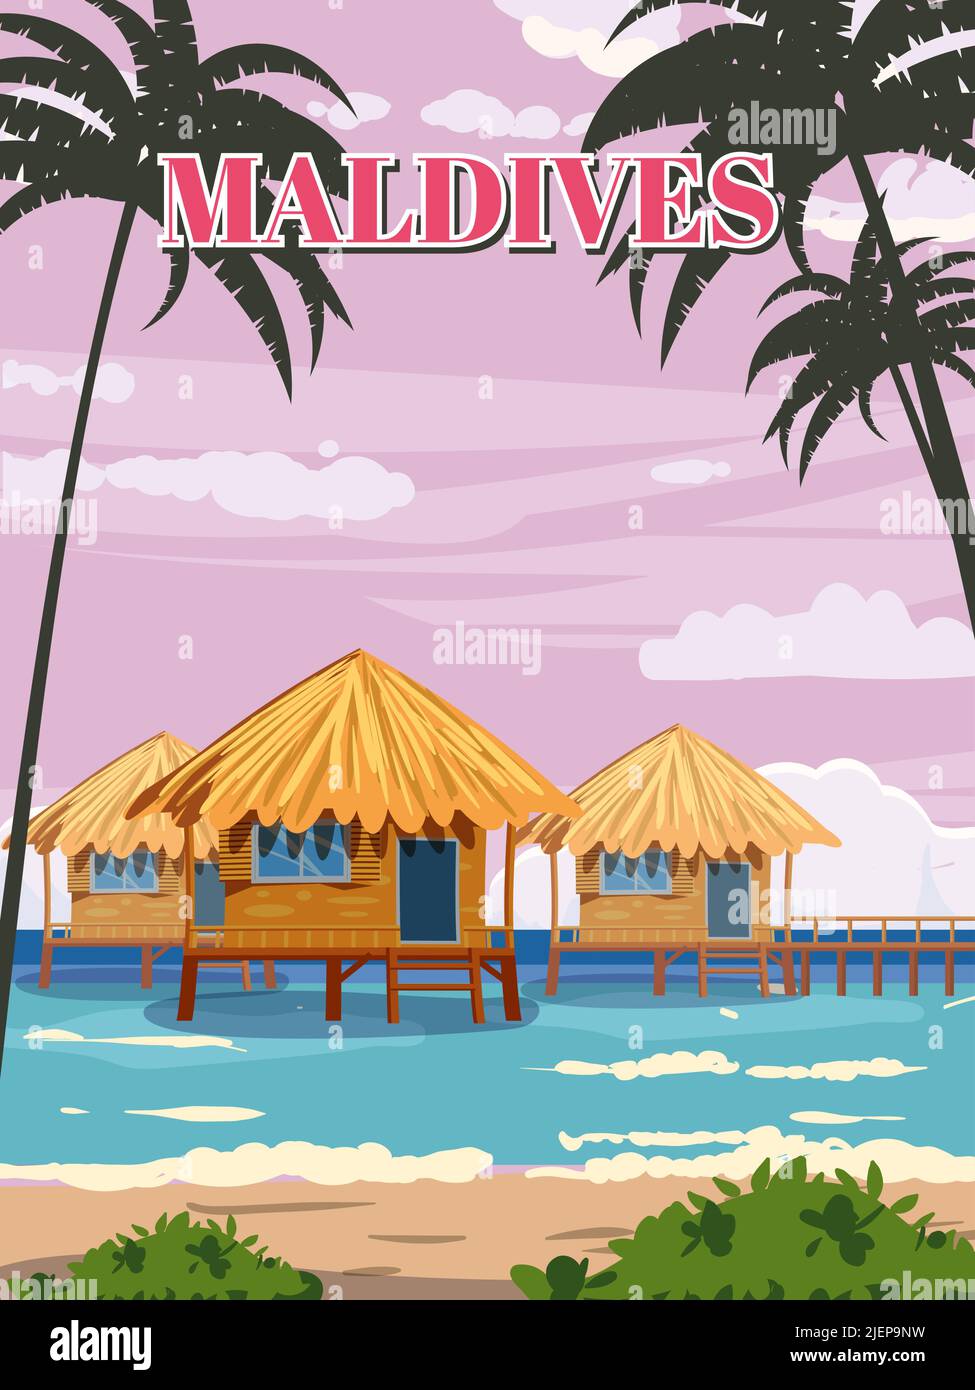 Maldive tropicale resort poster vintage. Vacanze estive. Spiaggia costa capanne tradizionali, palme, oceano. Vettore di illustrazione stile retrò Illustrazione Vettoriale